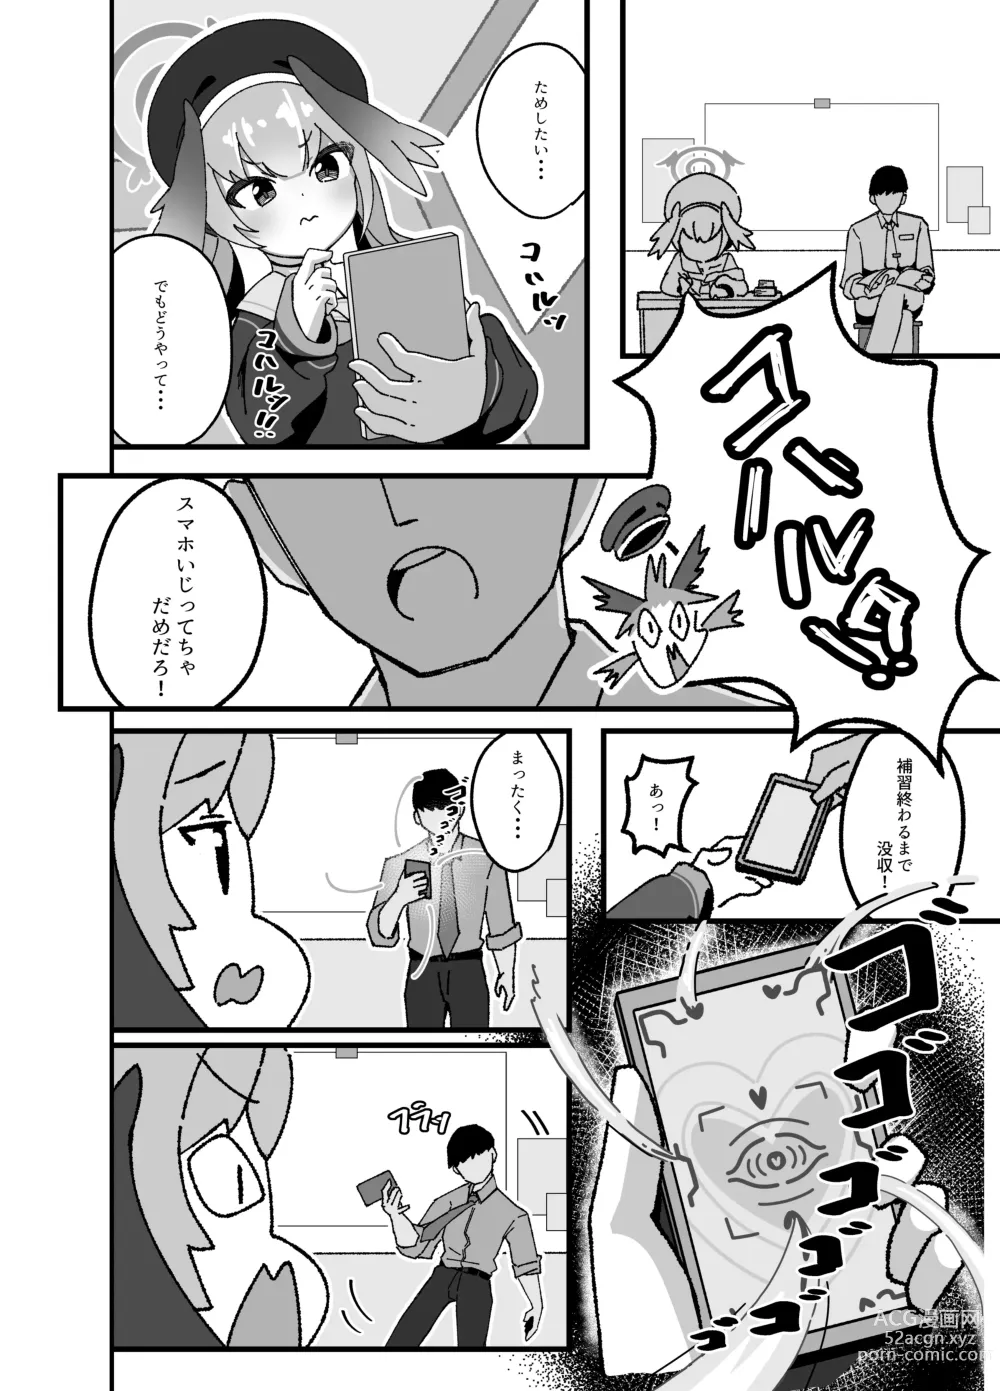 Page 6 of doujinshi Anna Koto ya Konna Koto mo Watashi no Omou ga Mama!?